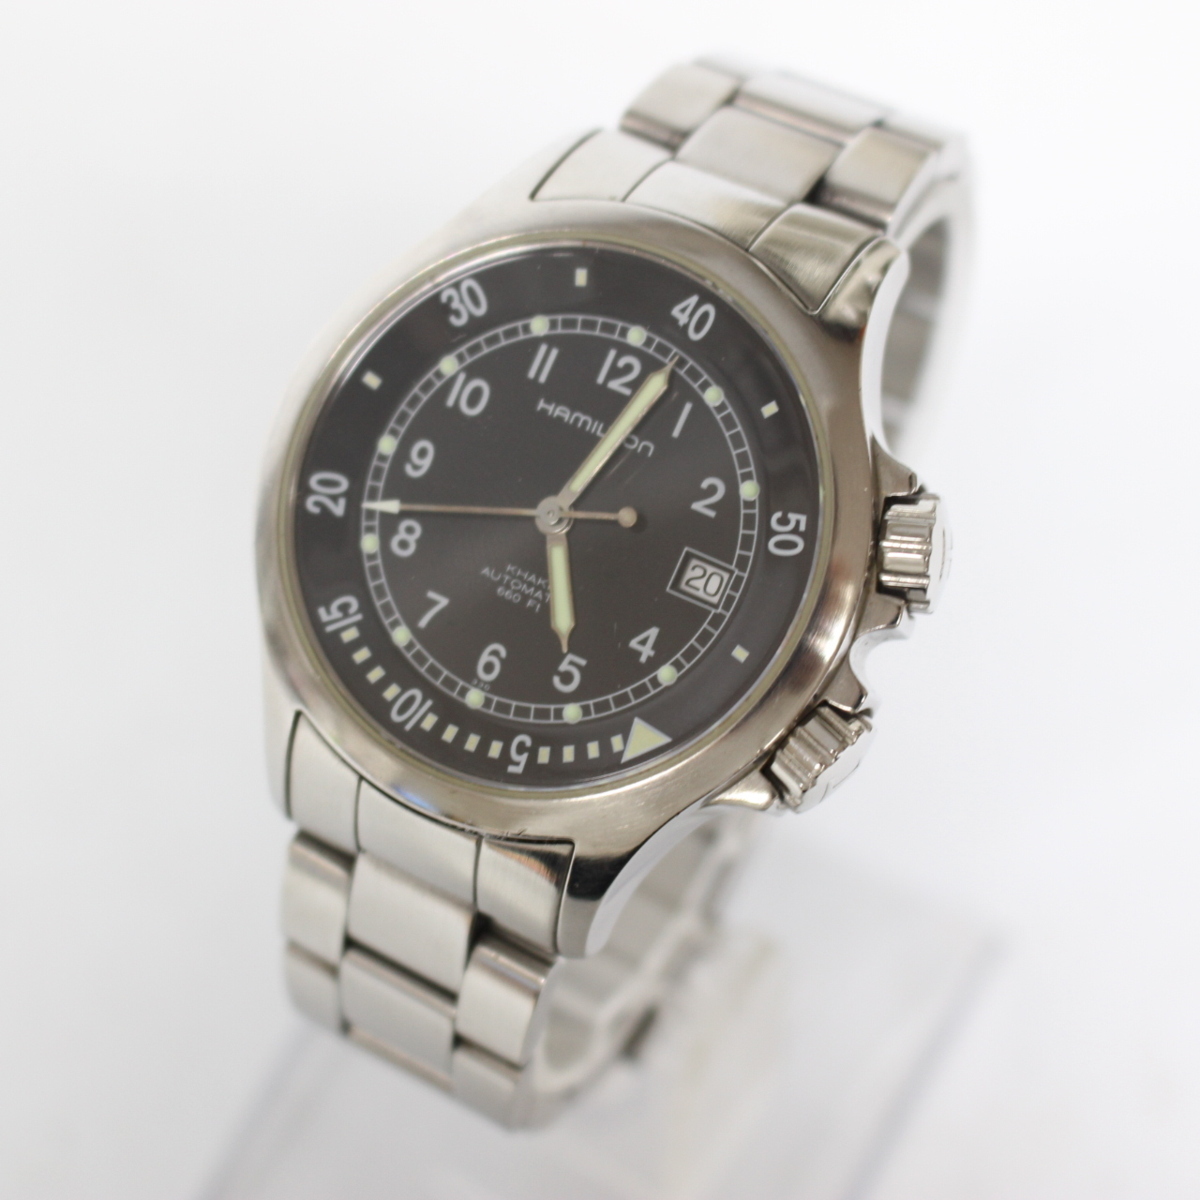 HAMILTON ハミルトン デイト アナログ カーキ 自動巻き 腕時計 H775150 ブラック